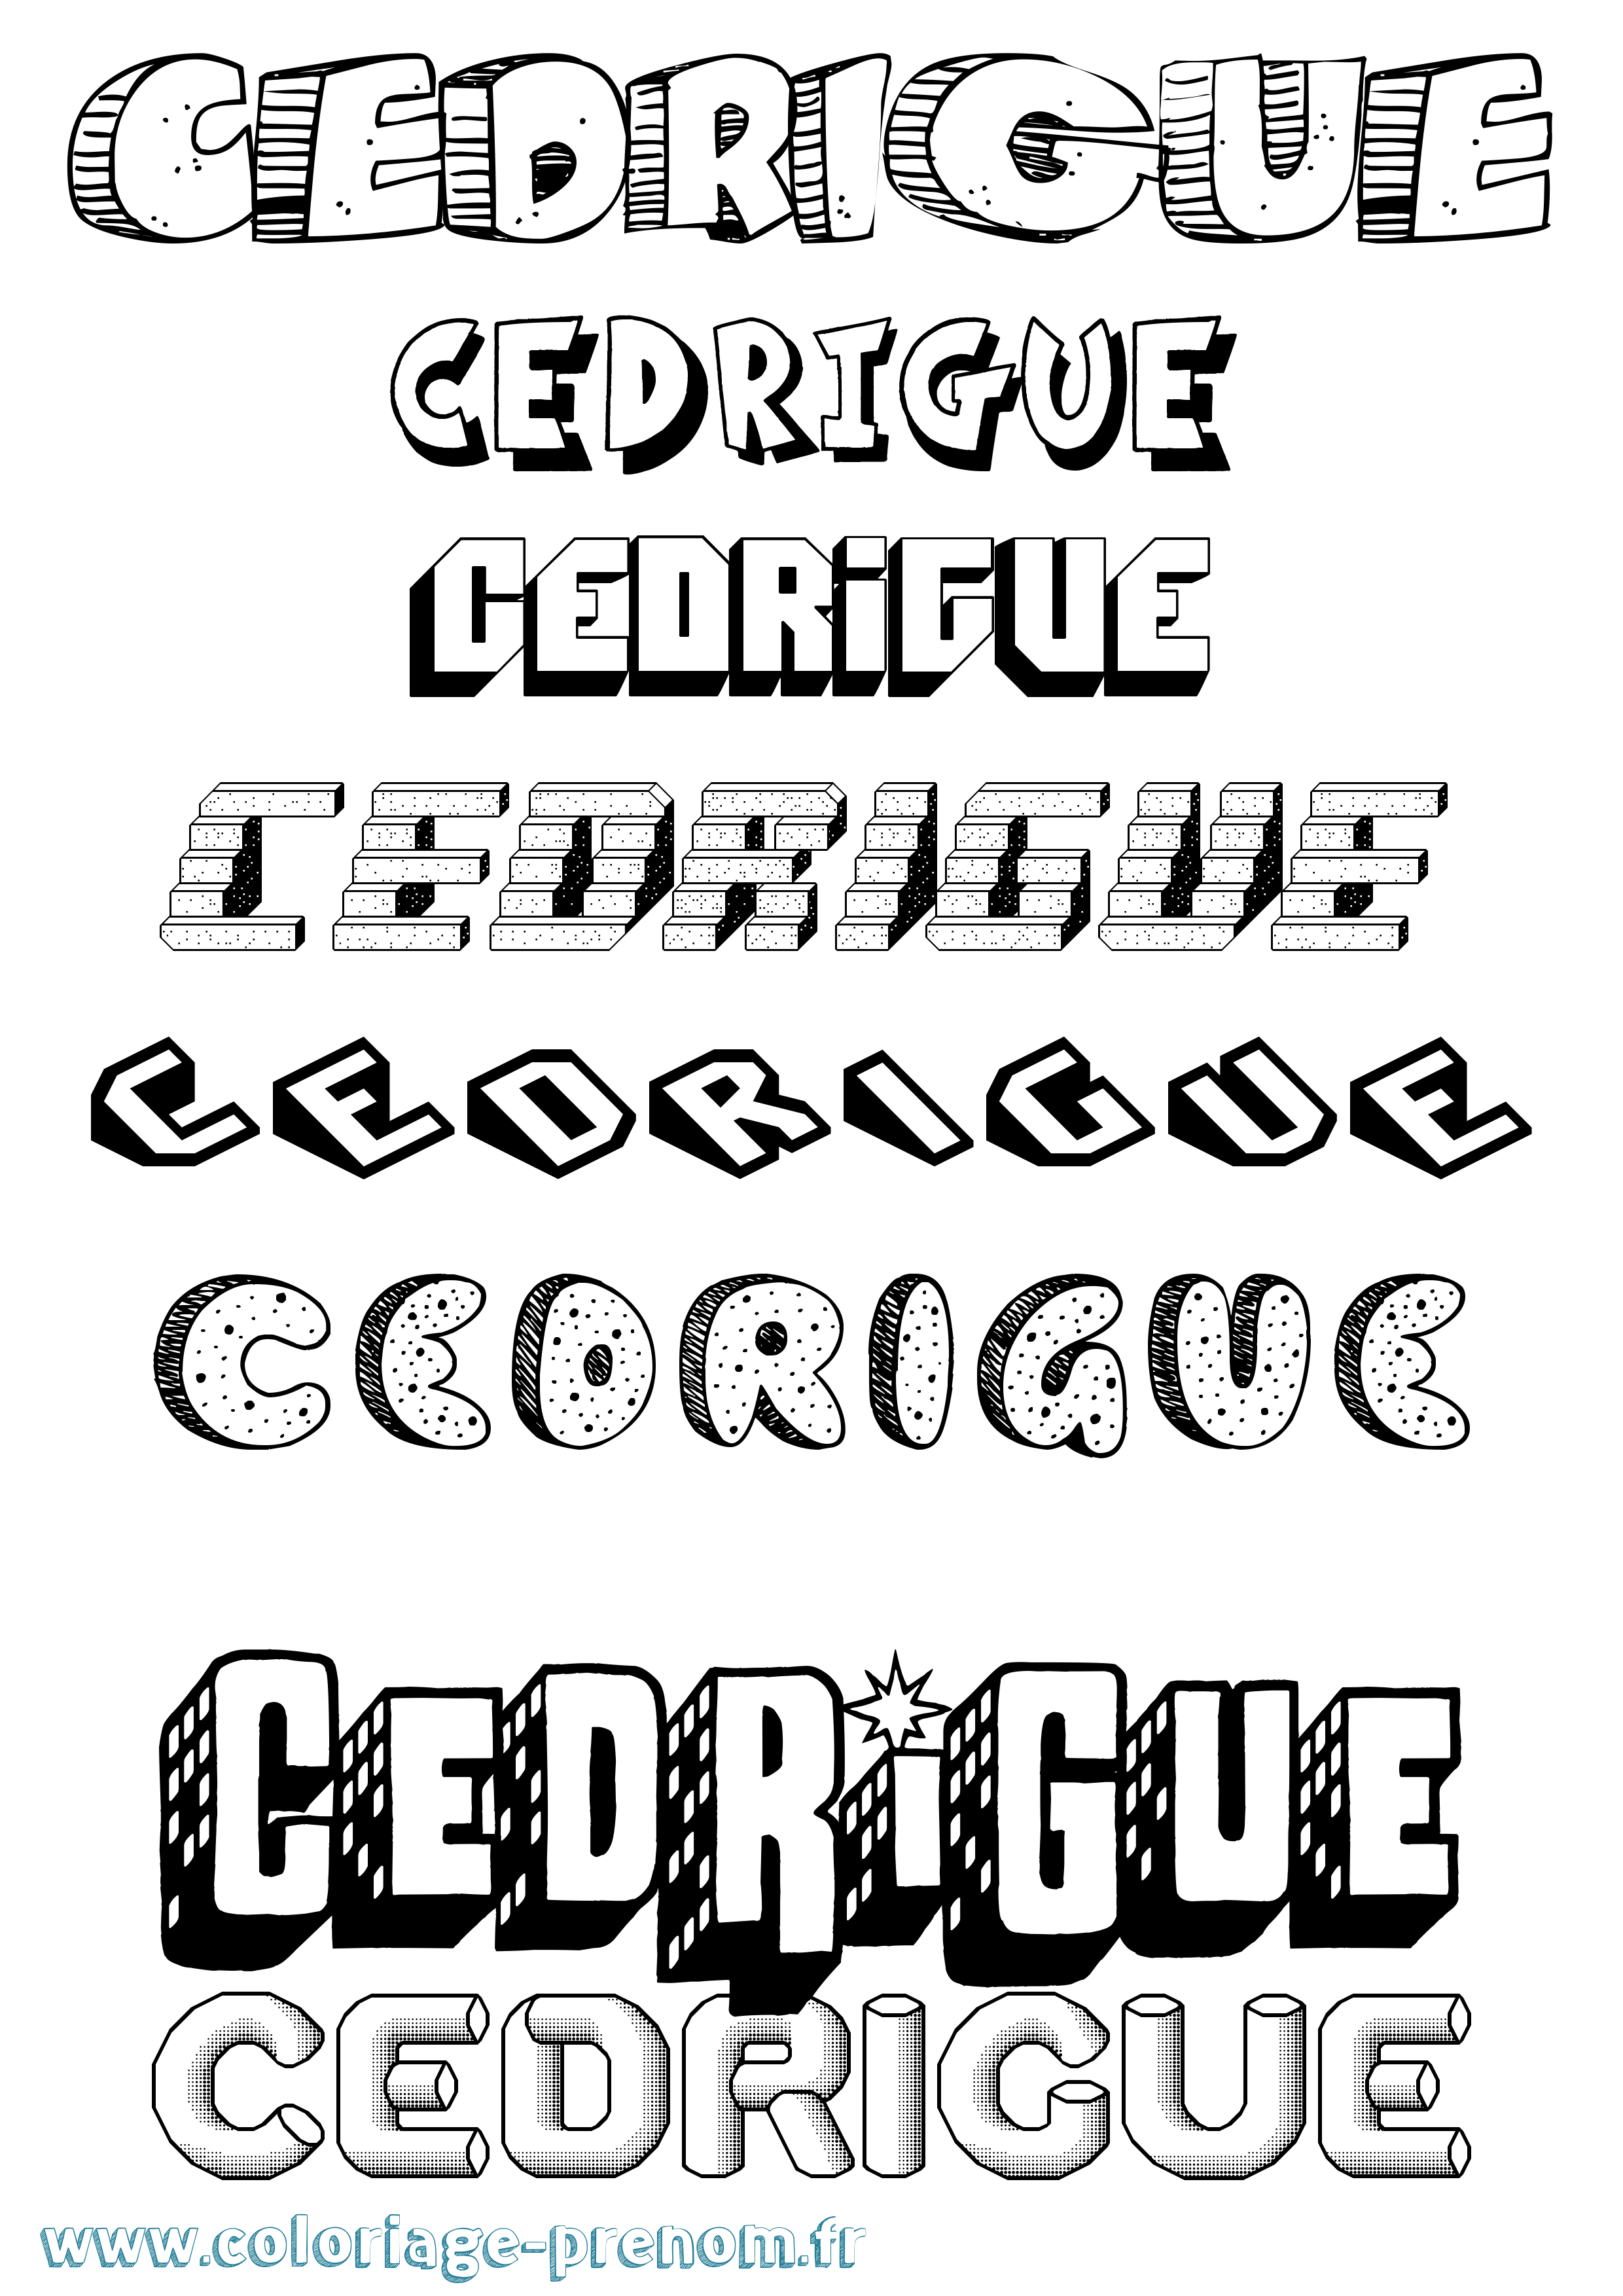 Coloriage prénom Cedrigue Effet 3D